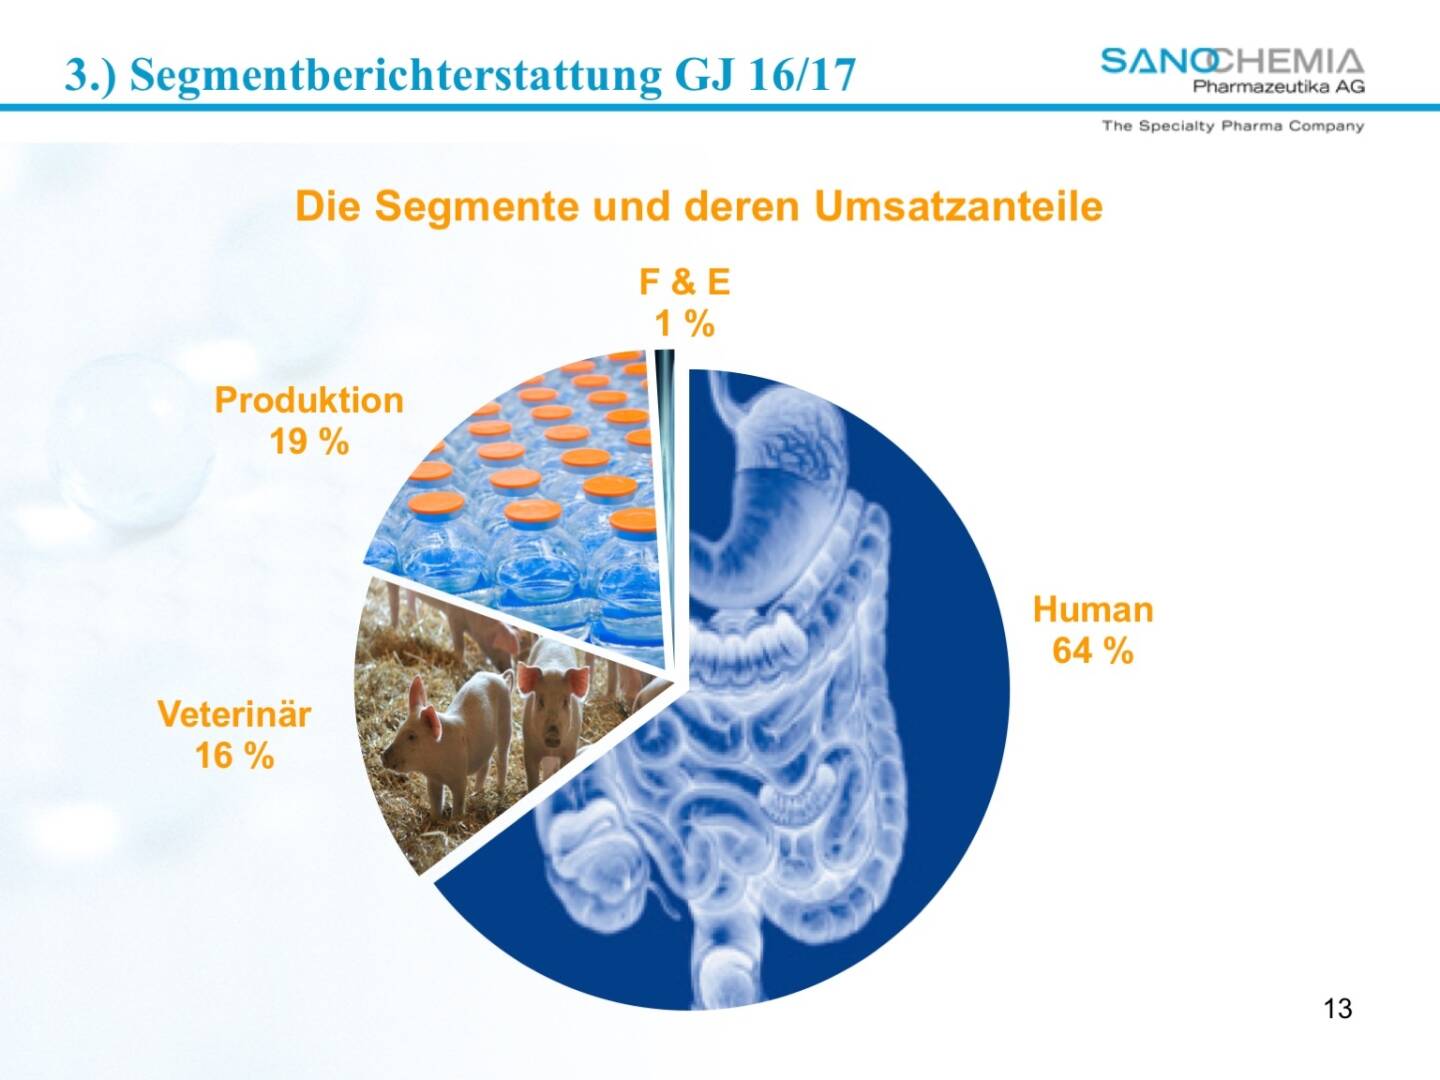 Präsentation Sanochemia - Segmente und deren Umsatzanteile